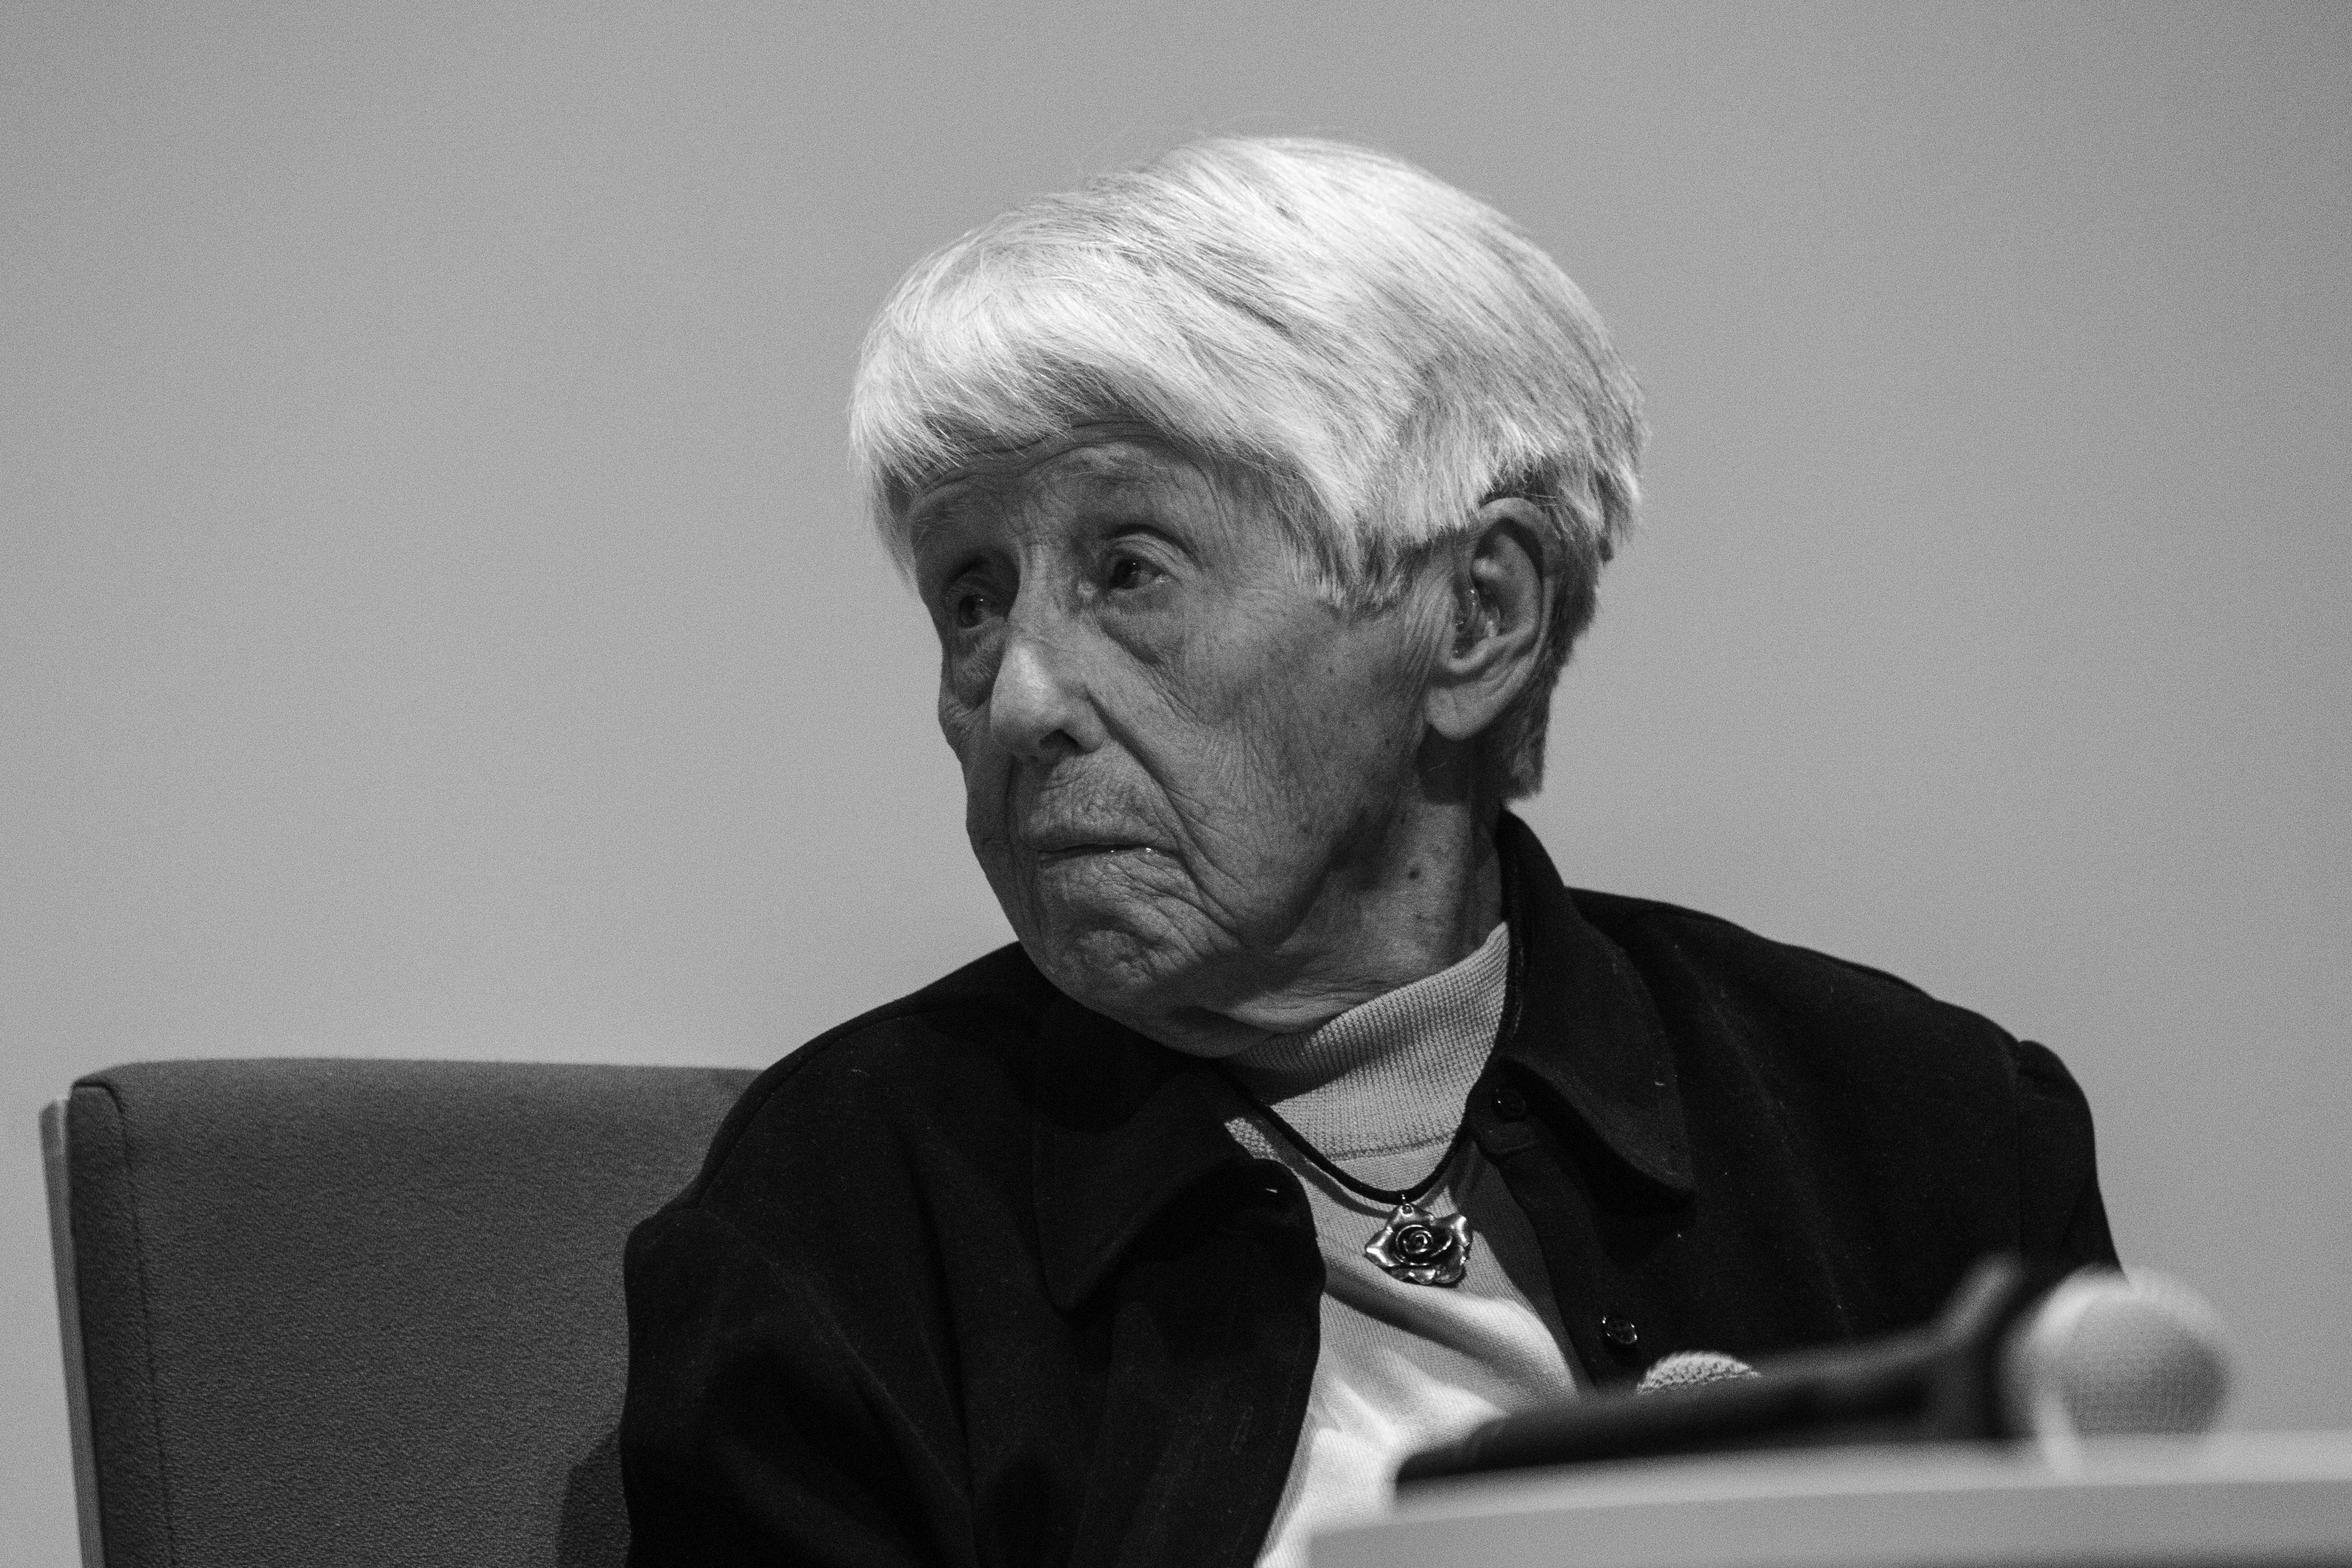 Na zdjęciu kobieta - Maria Piechotka - z którkimi siwymi włosami.